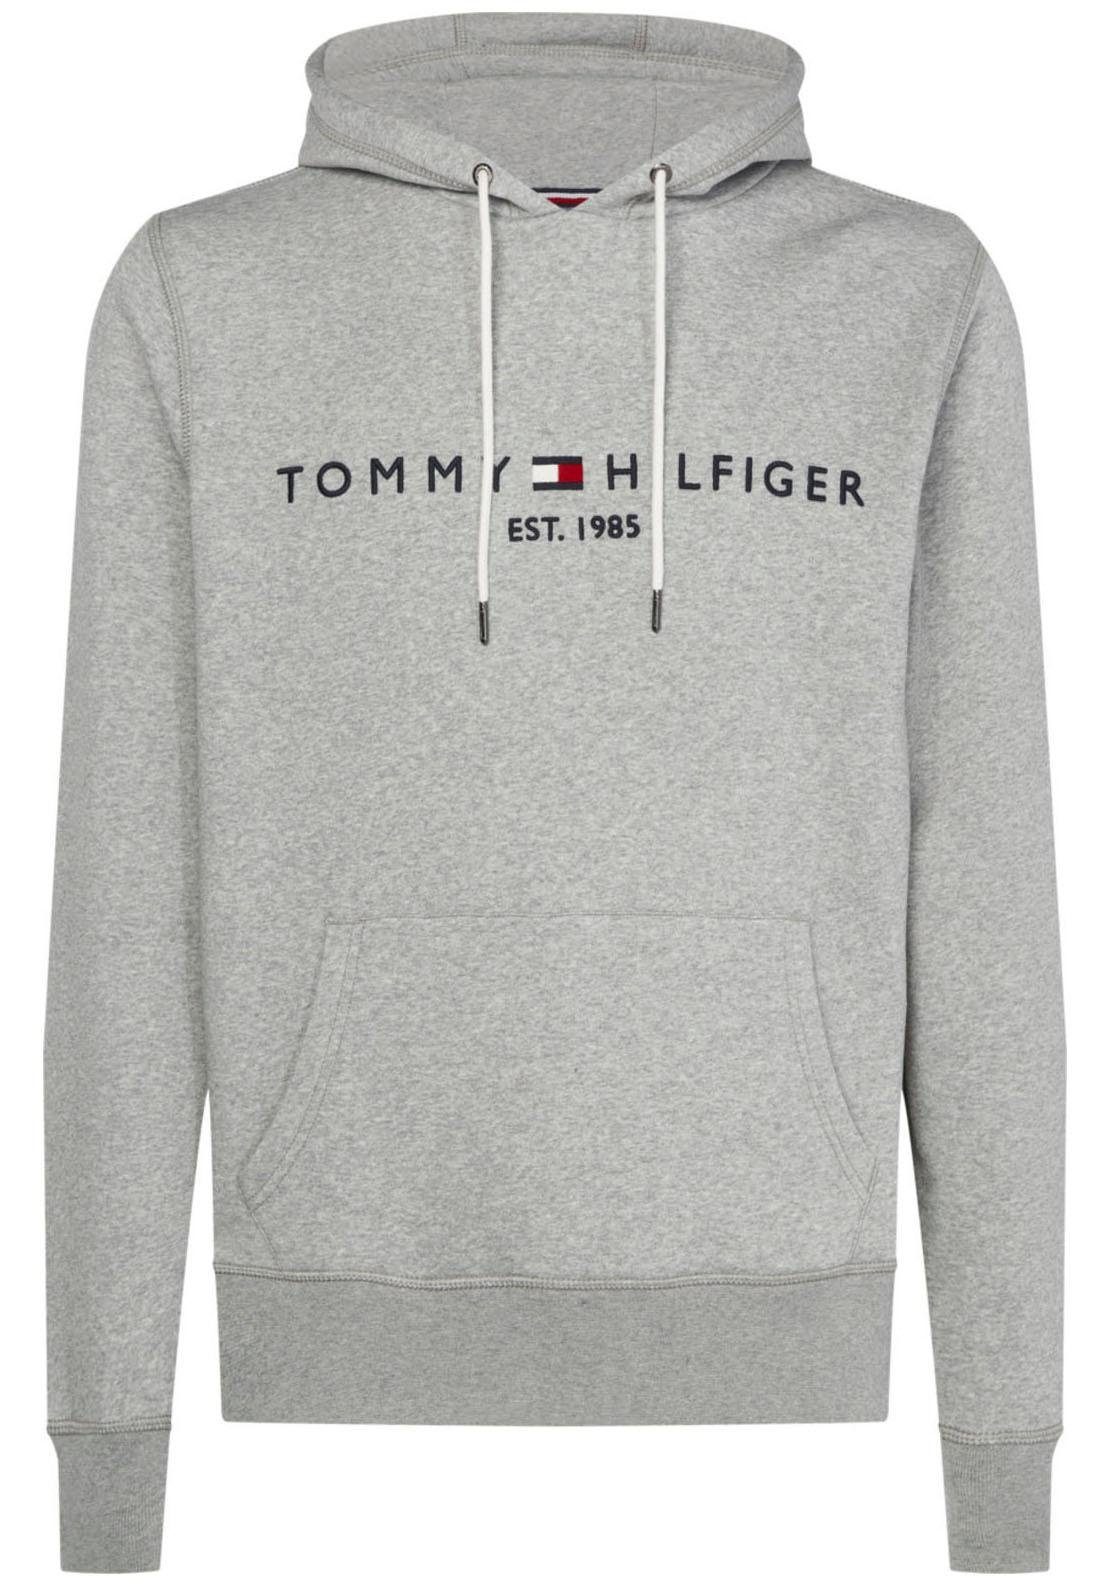 Tommy Hilfiger Sweatshirt online kaufen | OTTO